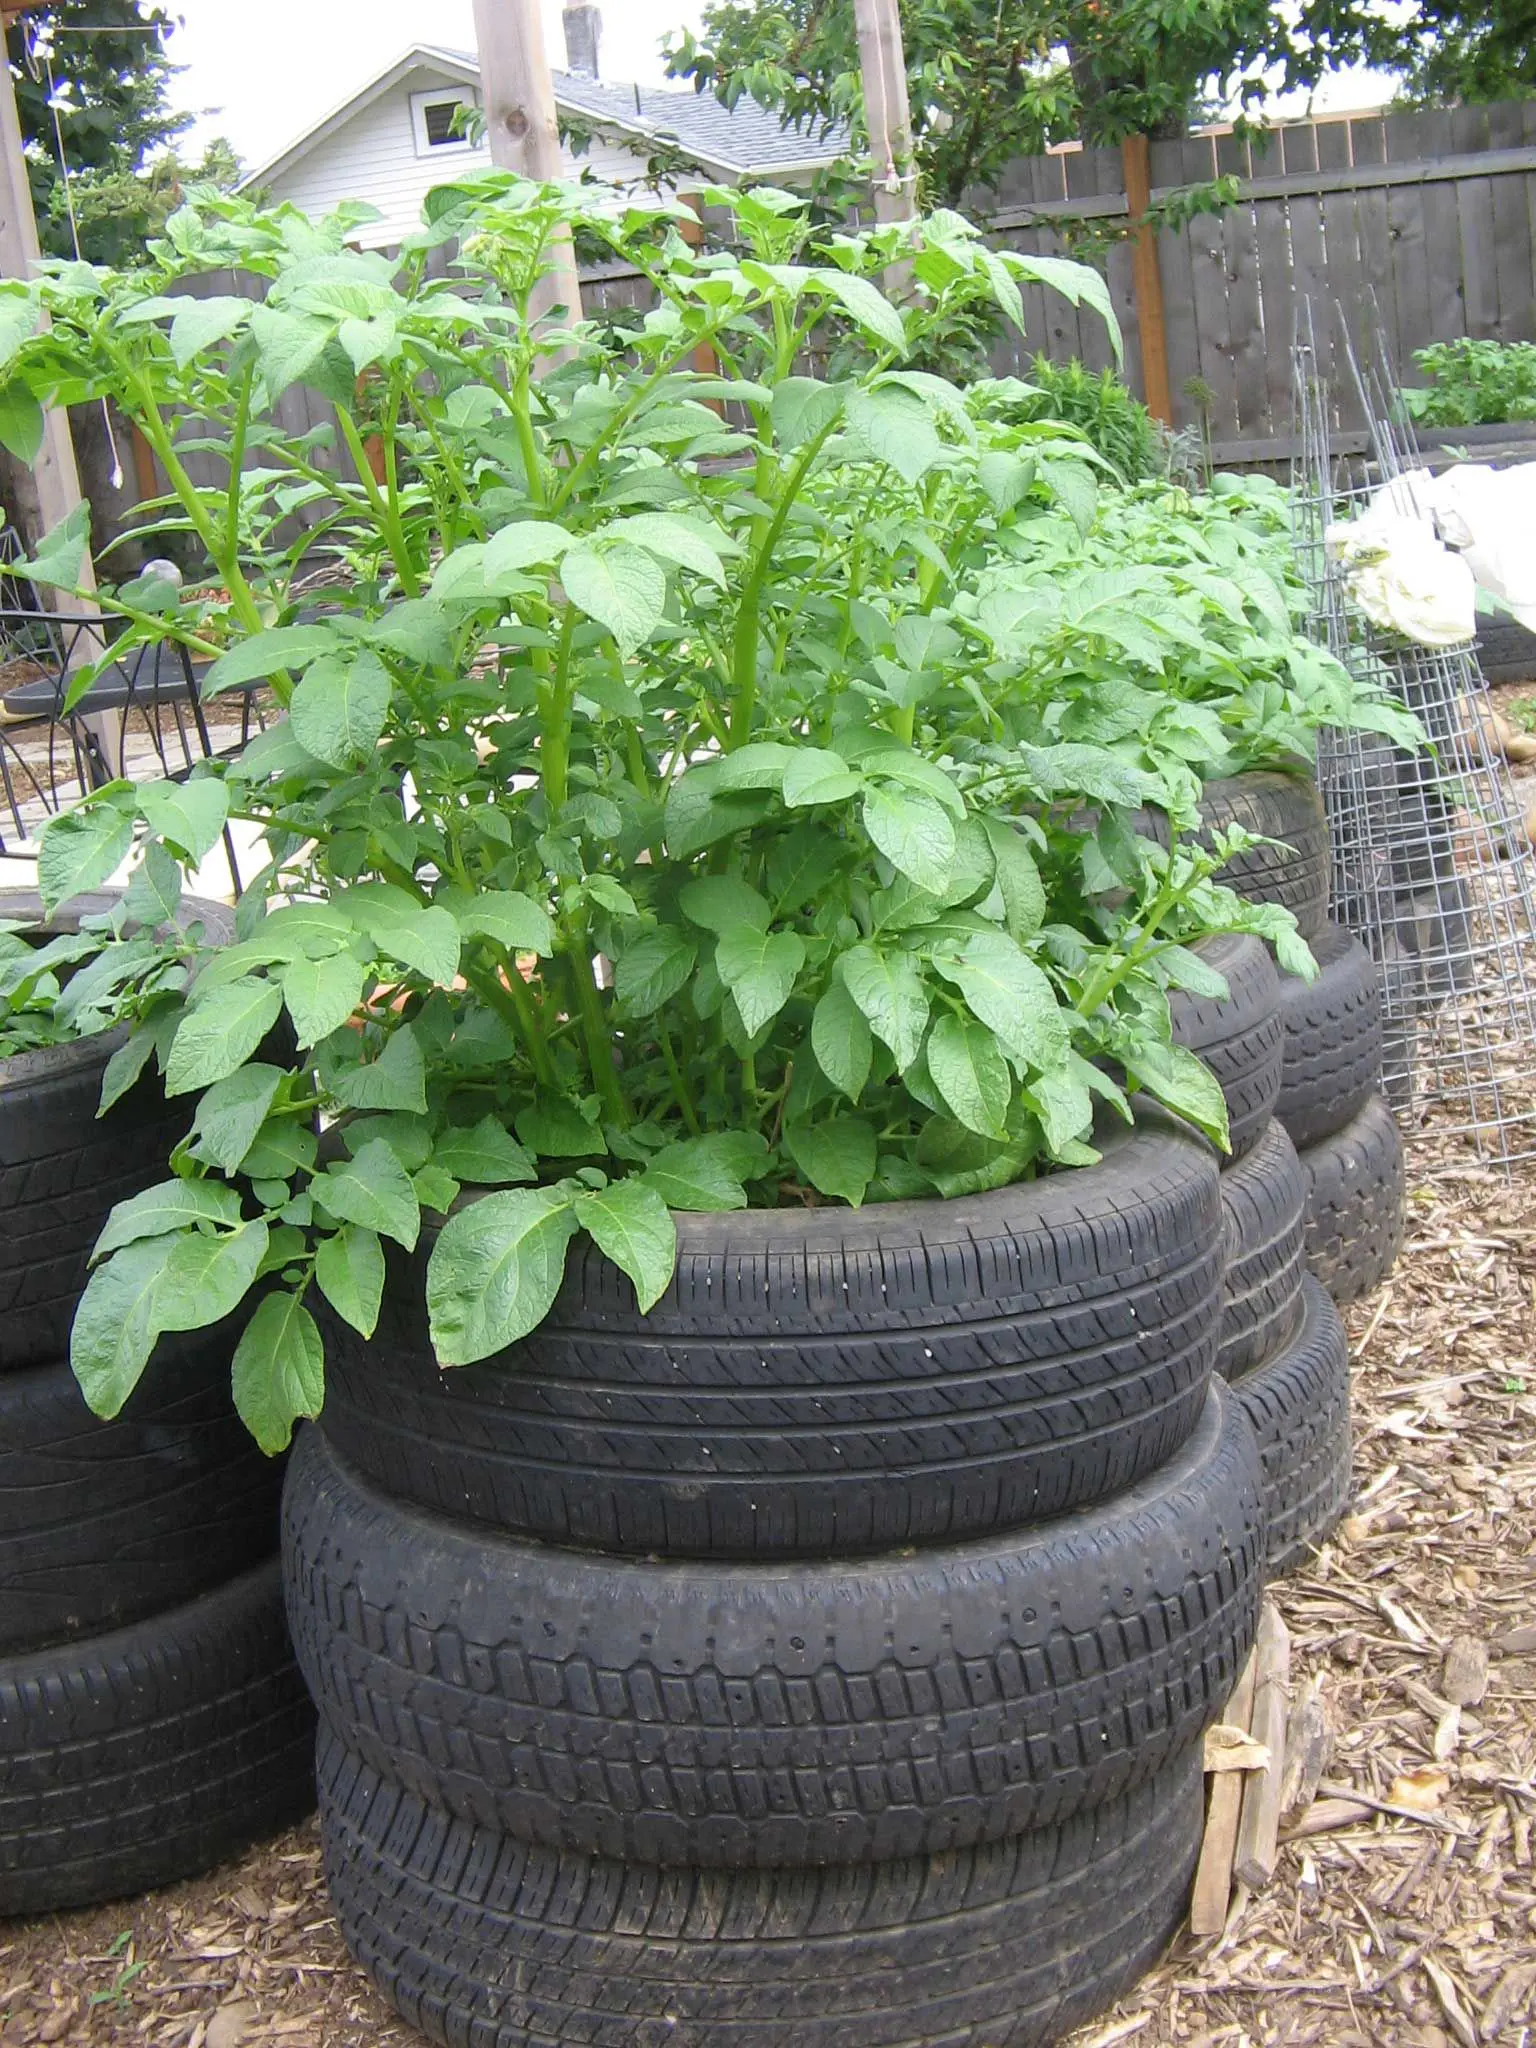 Growing potatoes in tyres